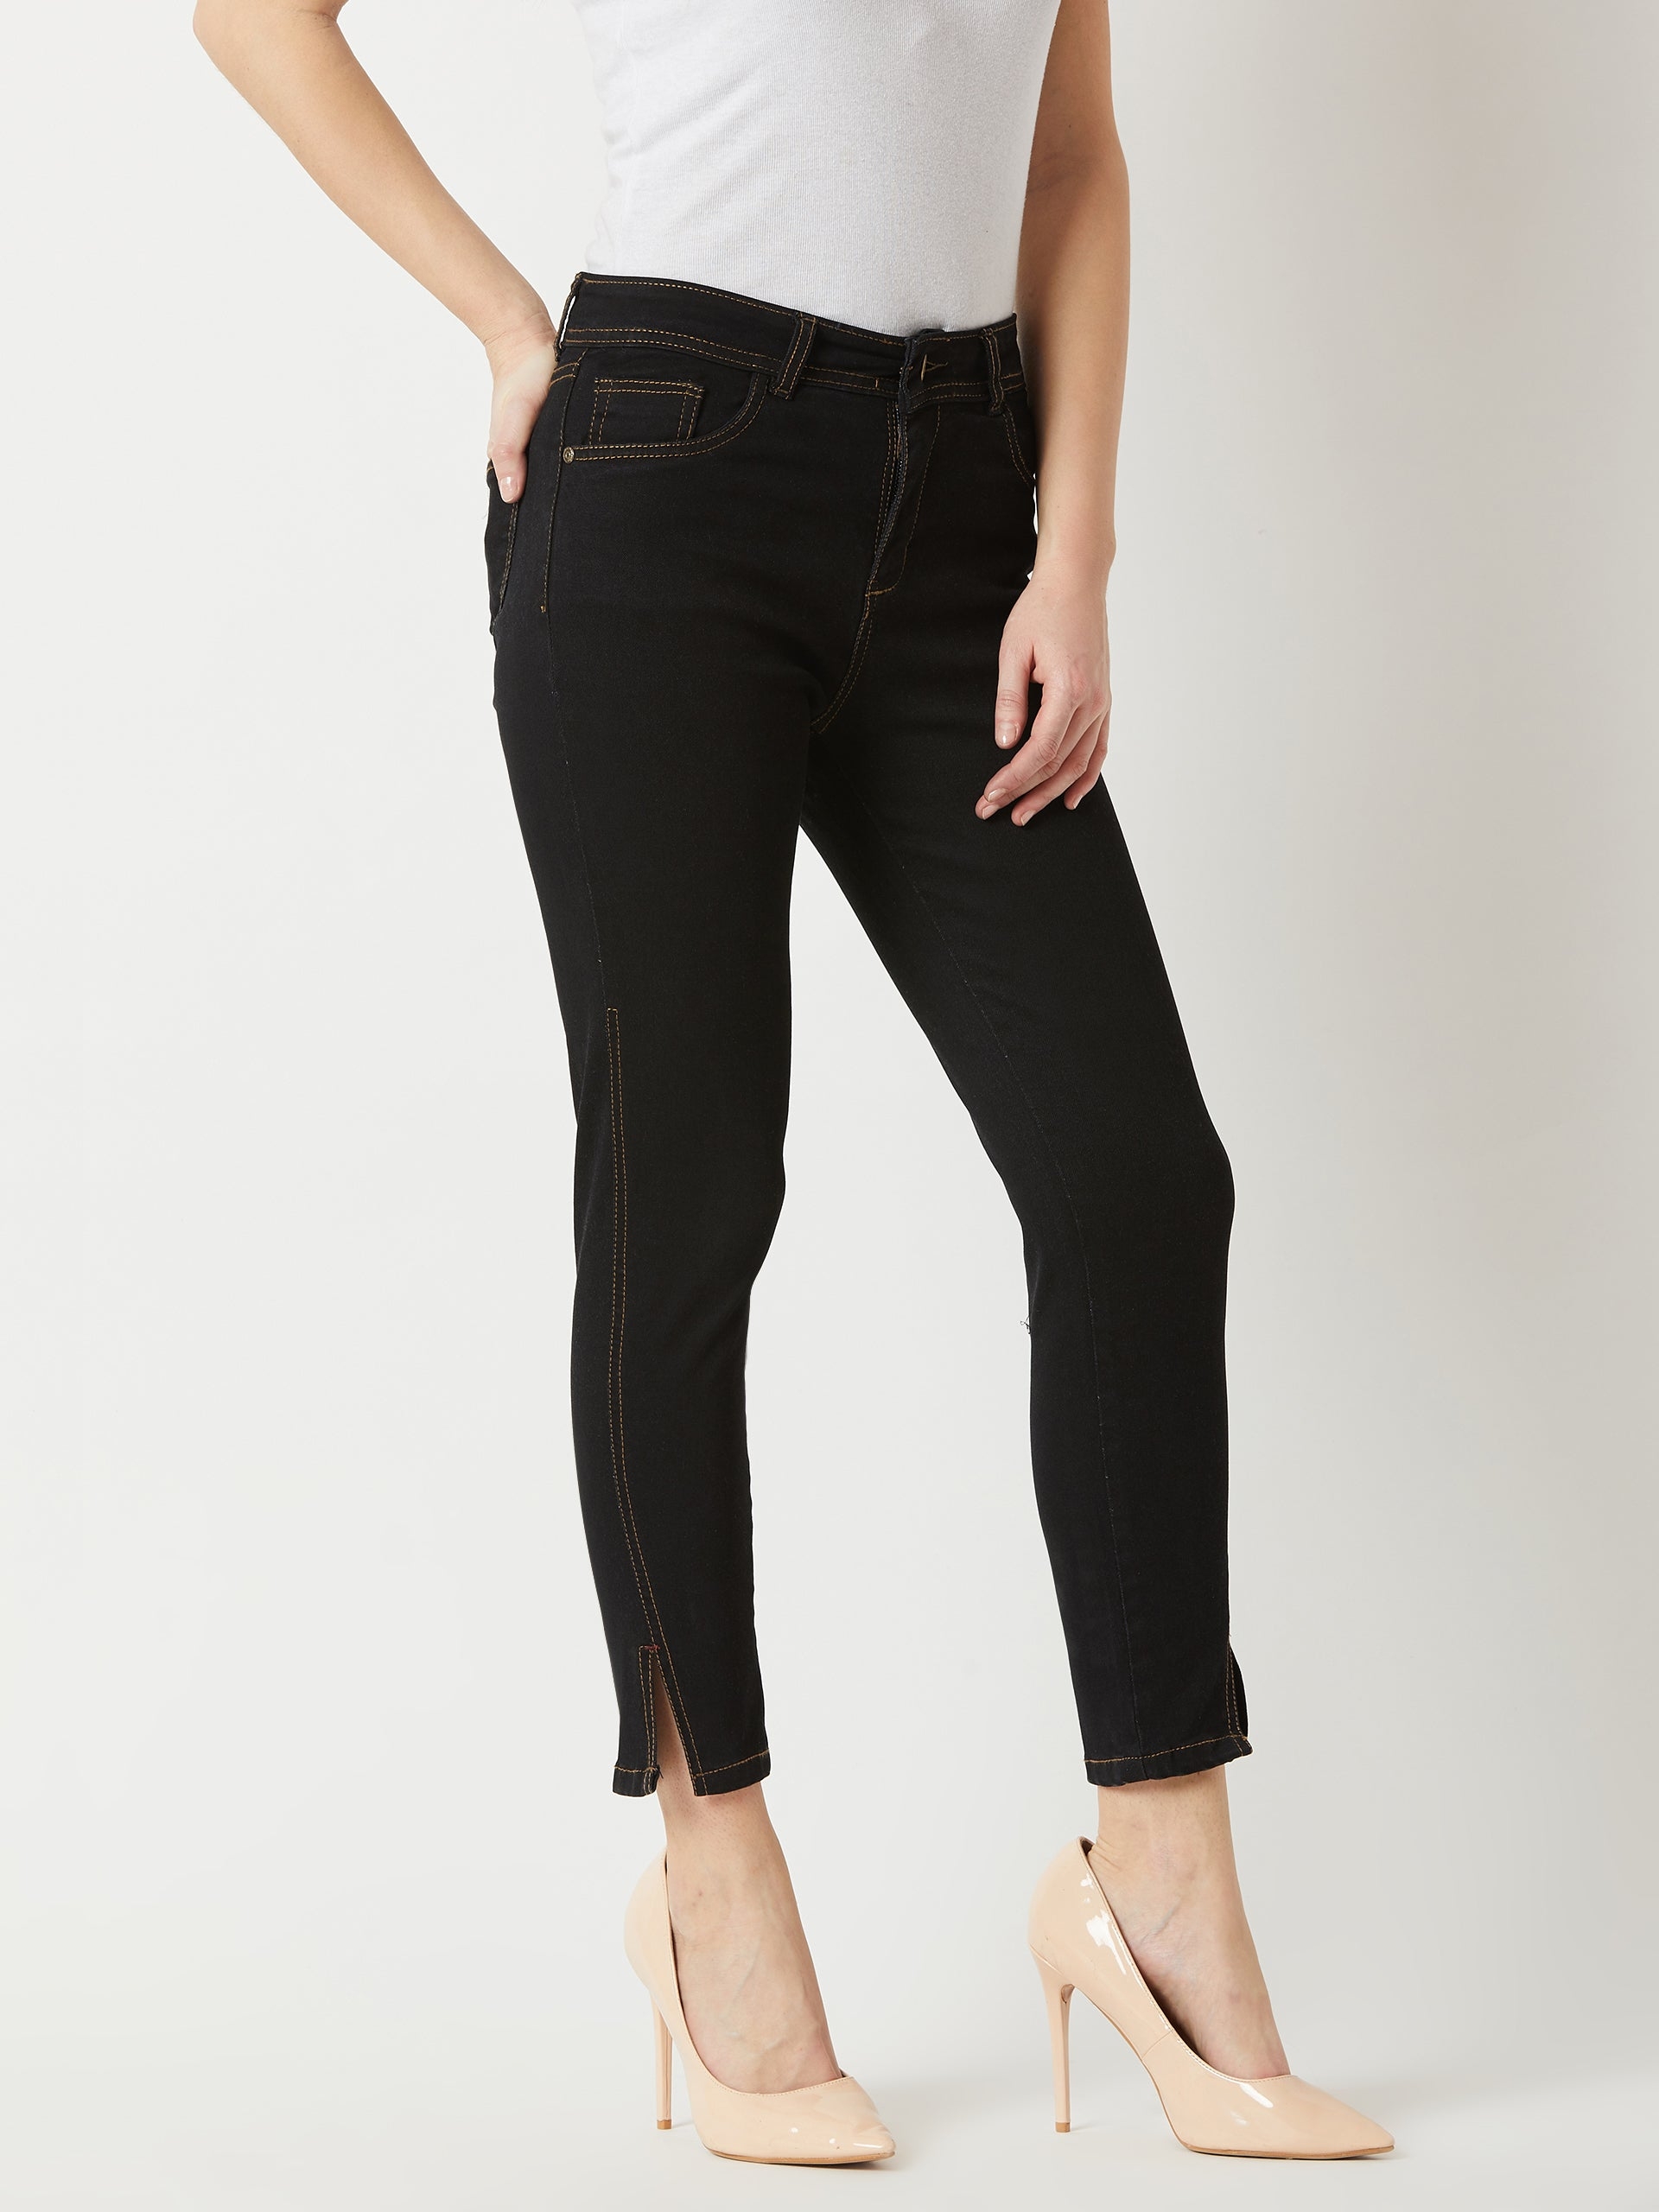 Black Skinny High Rise Side Slit Solid Ankle Length Stretchable Denim Jeans